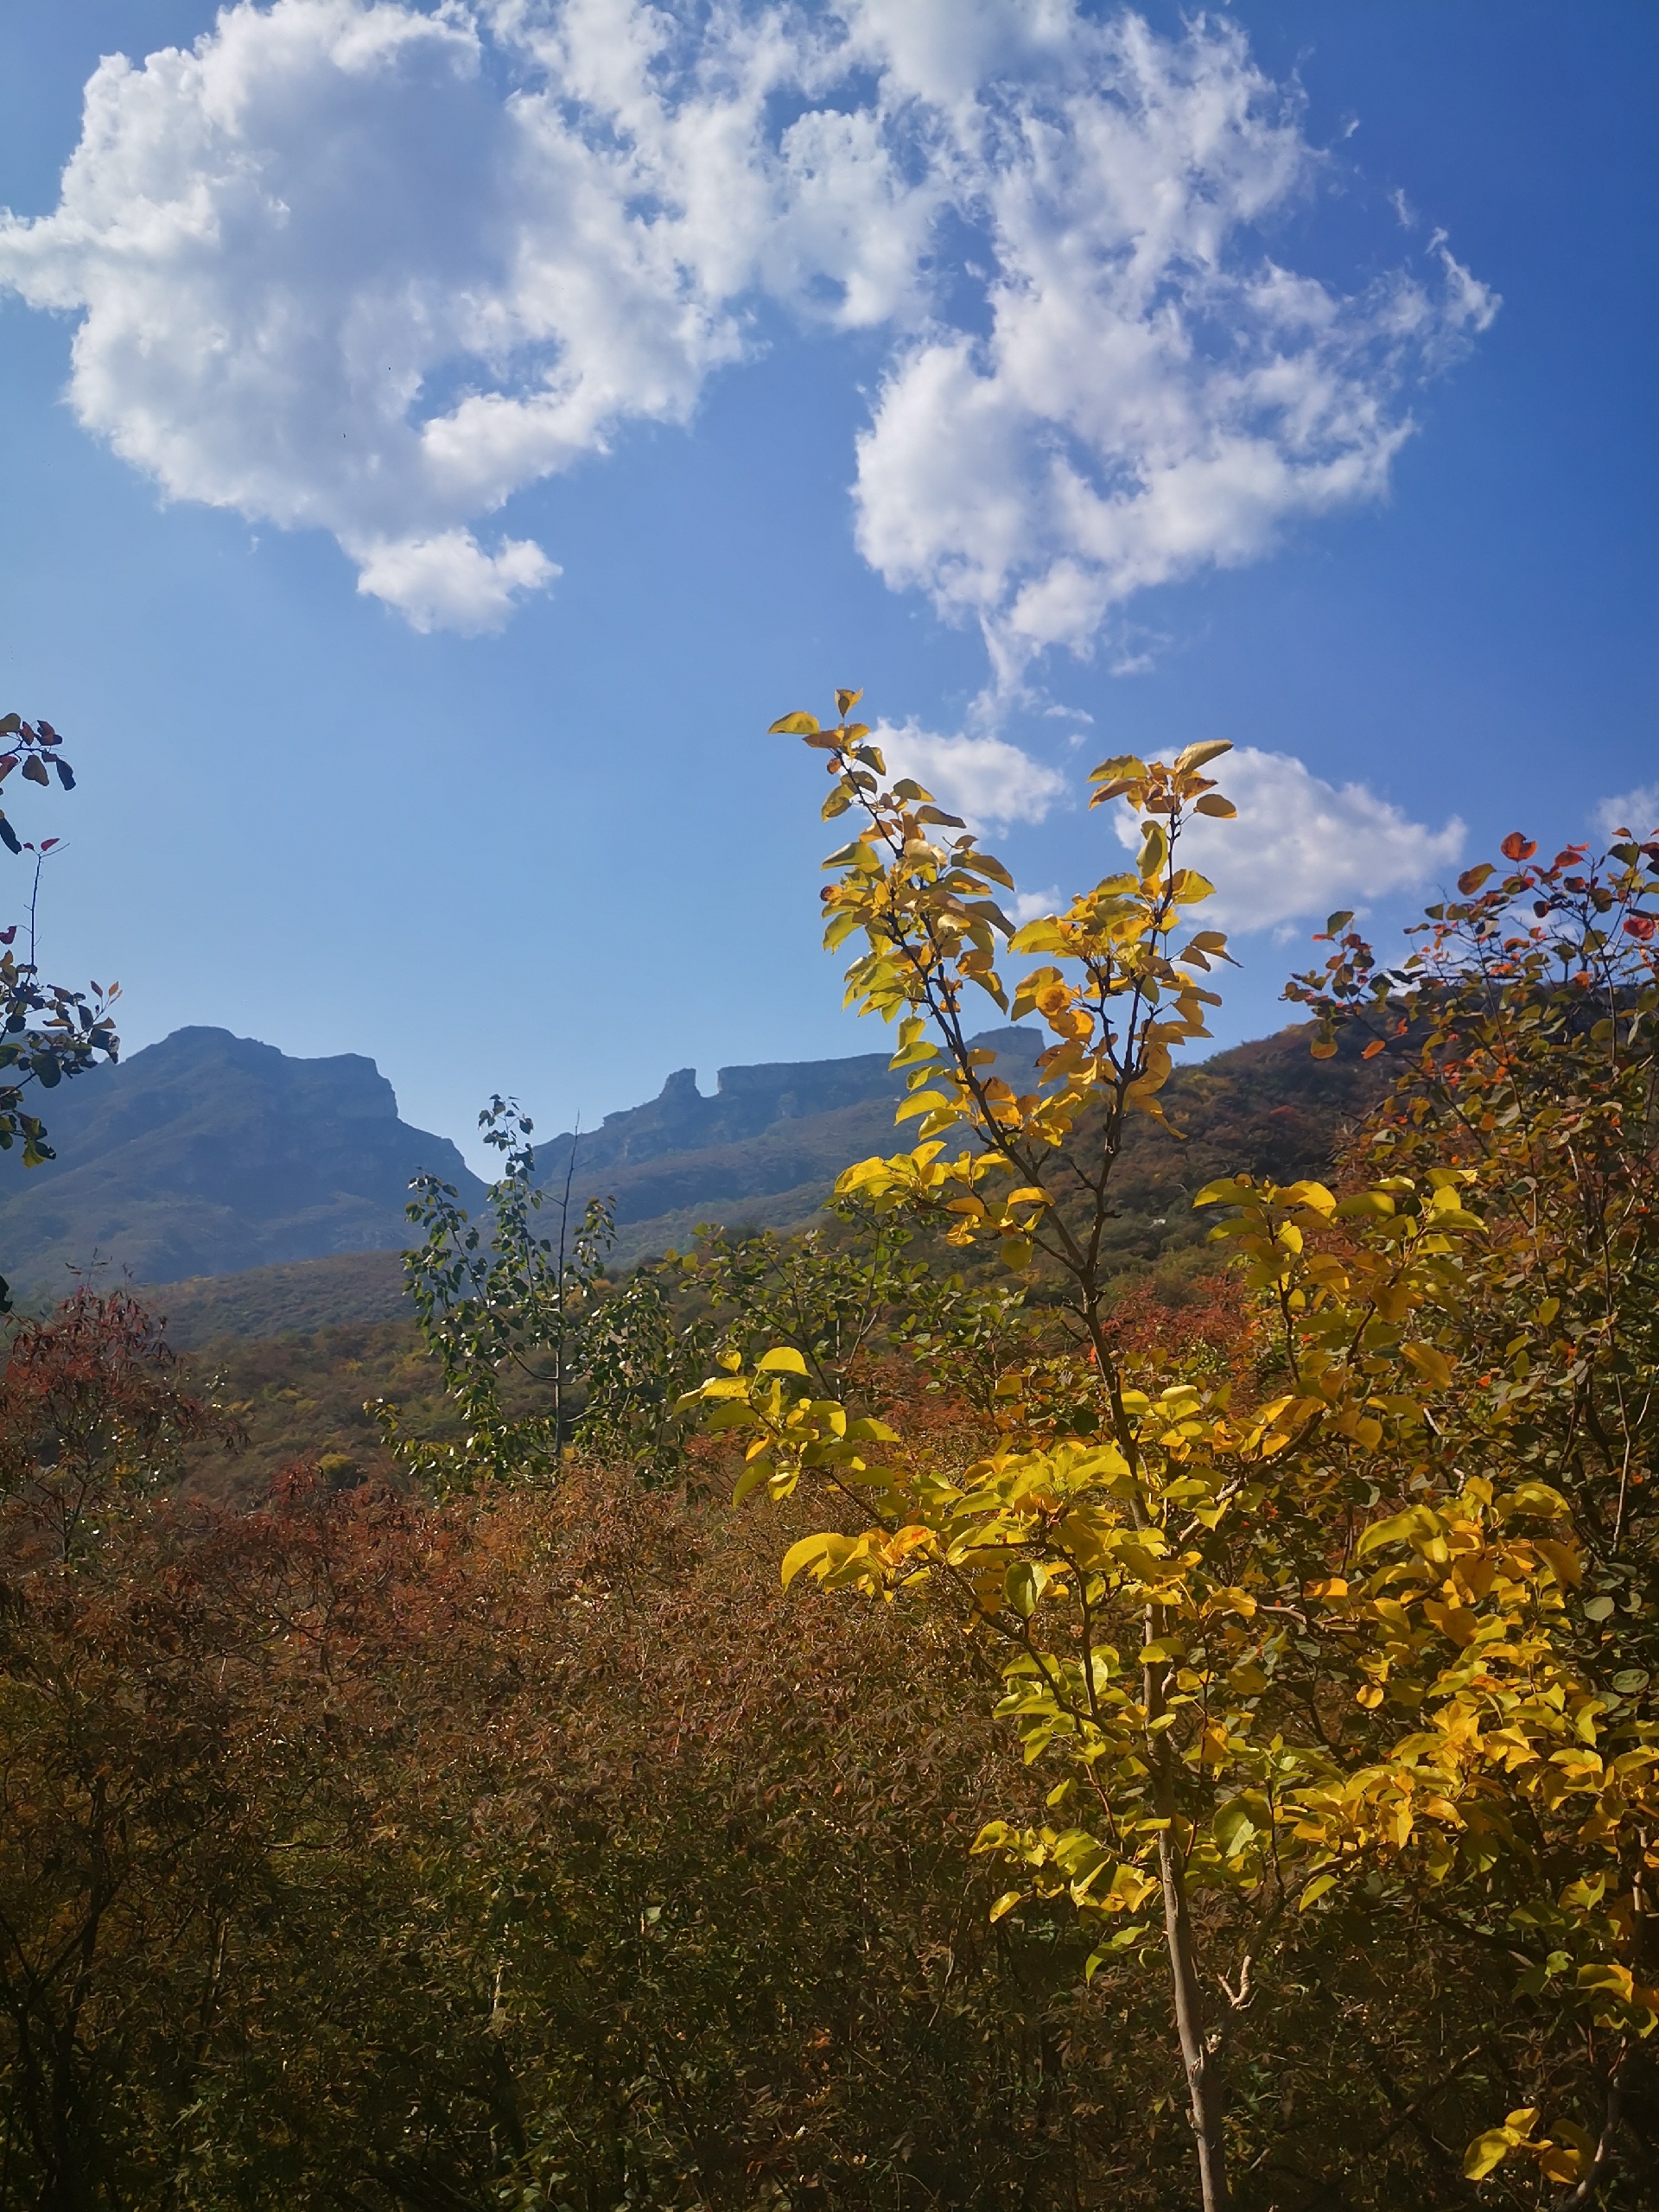 坡峰岭红叶节色彩斑斓 相比于香山公园有过之而无不及